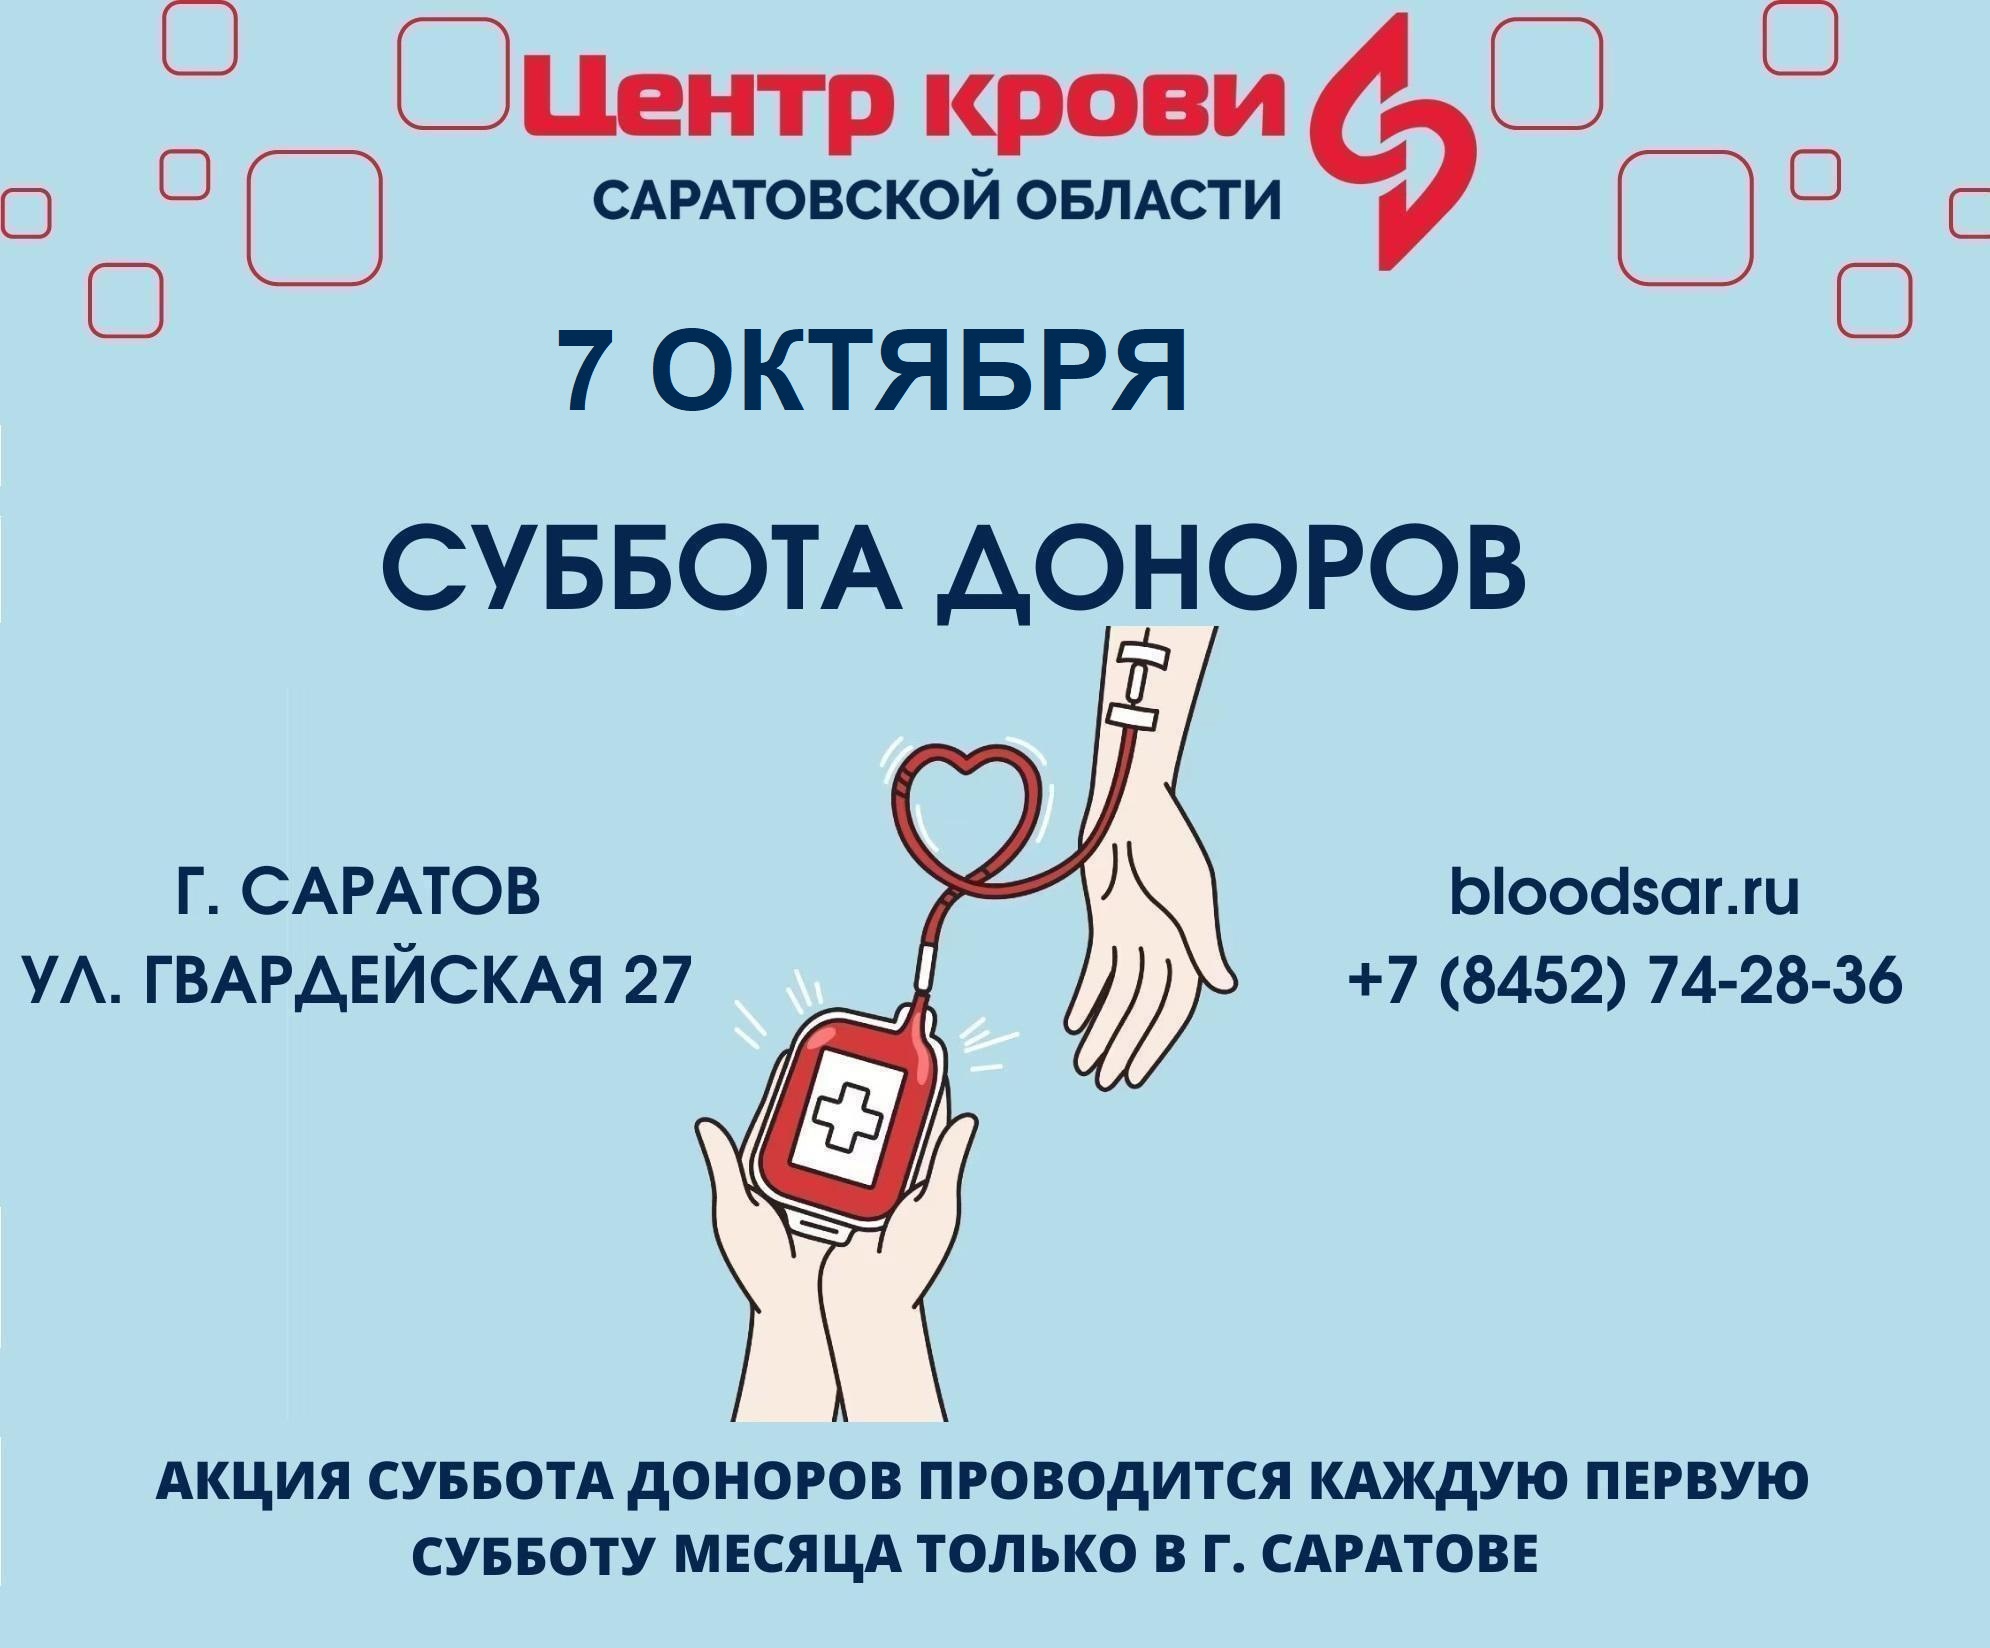 Донорство крови суббота. Донорство крови. Донорский центр Саратов. Суббота донора картинки. Плакат донорская суббота.